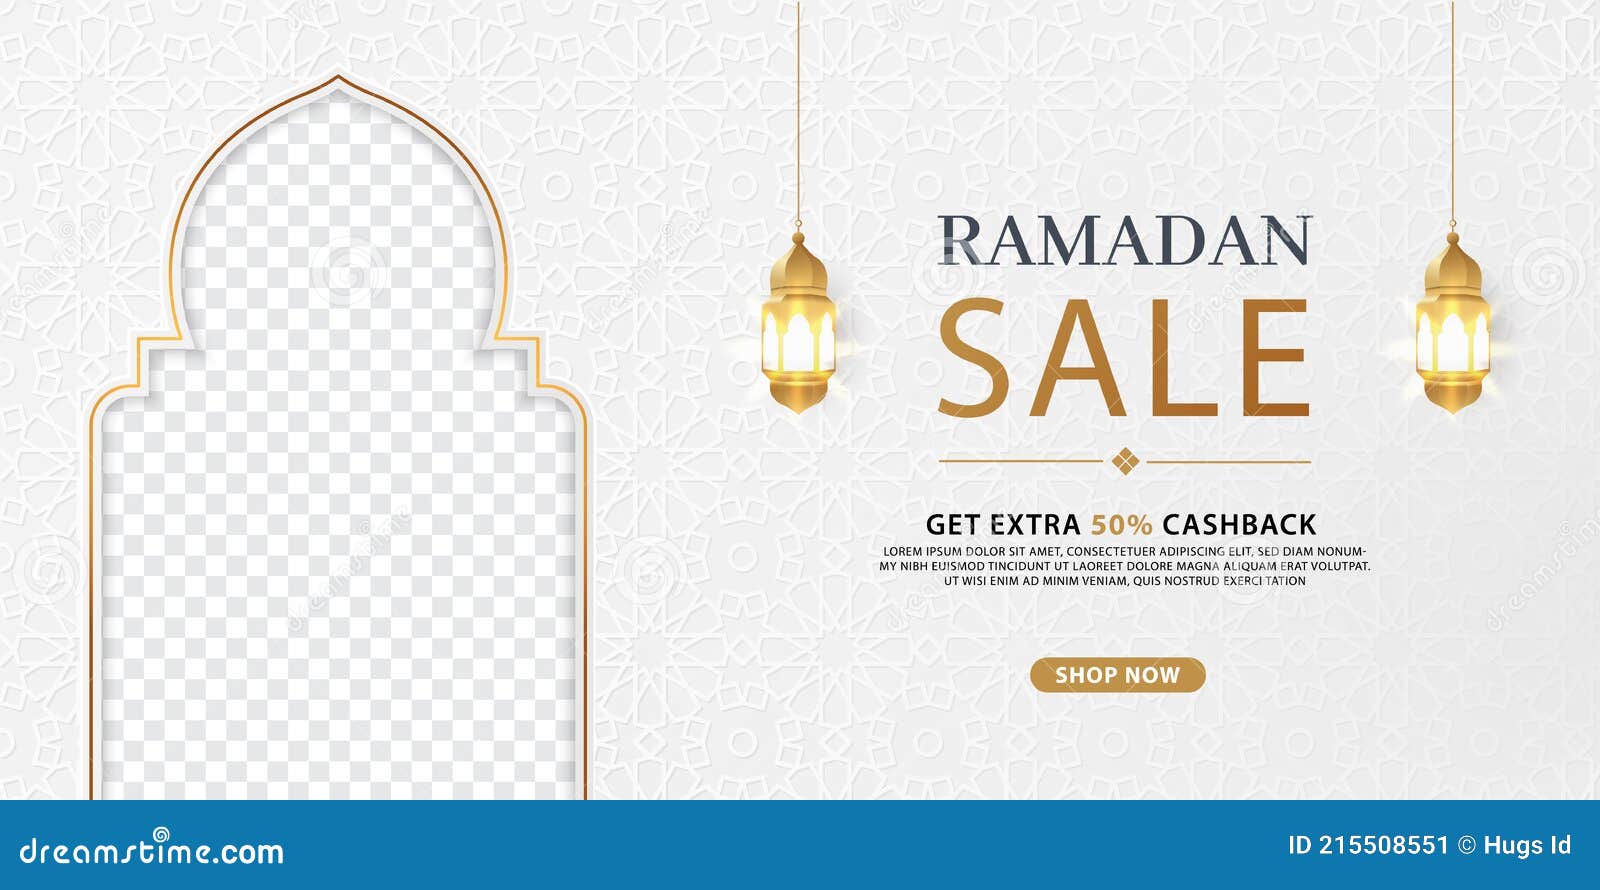 Đừng bỏ lỡ cơ hội mua sắm hấp dẫn trong mùa Ramadan này - bộ sưu tập các Banner Sale Ramadan đầy màu sắc sẽ giúp bạn tiết kiệm nhiều hơn khi mua sắm những sản phẩm yêu thích!